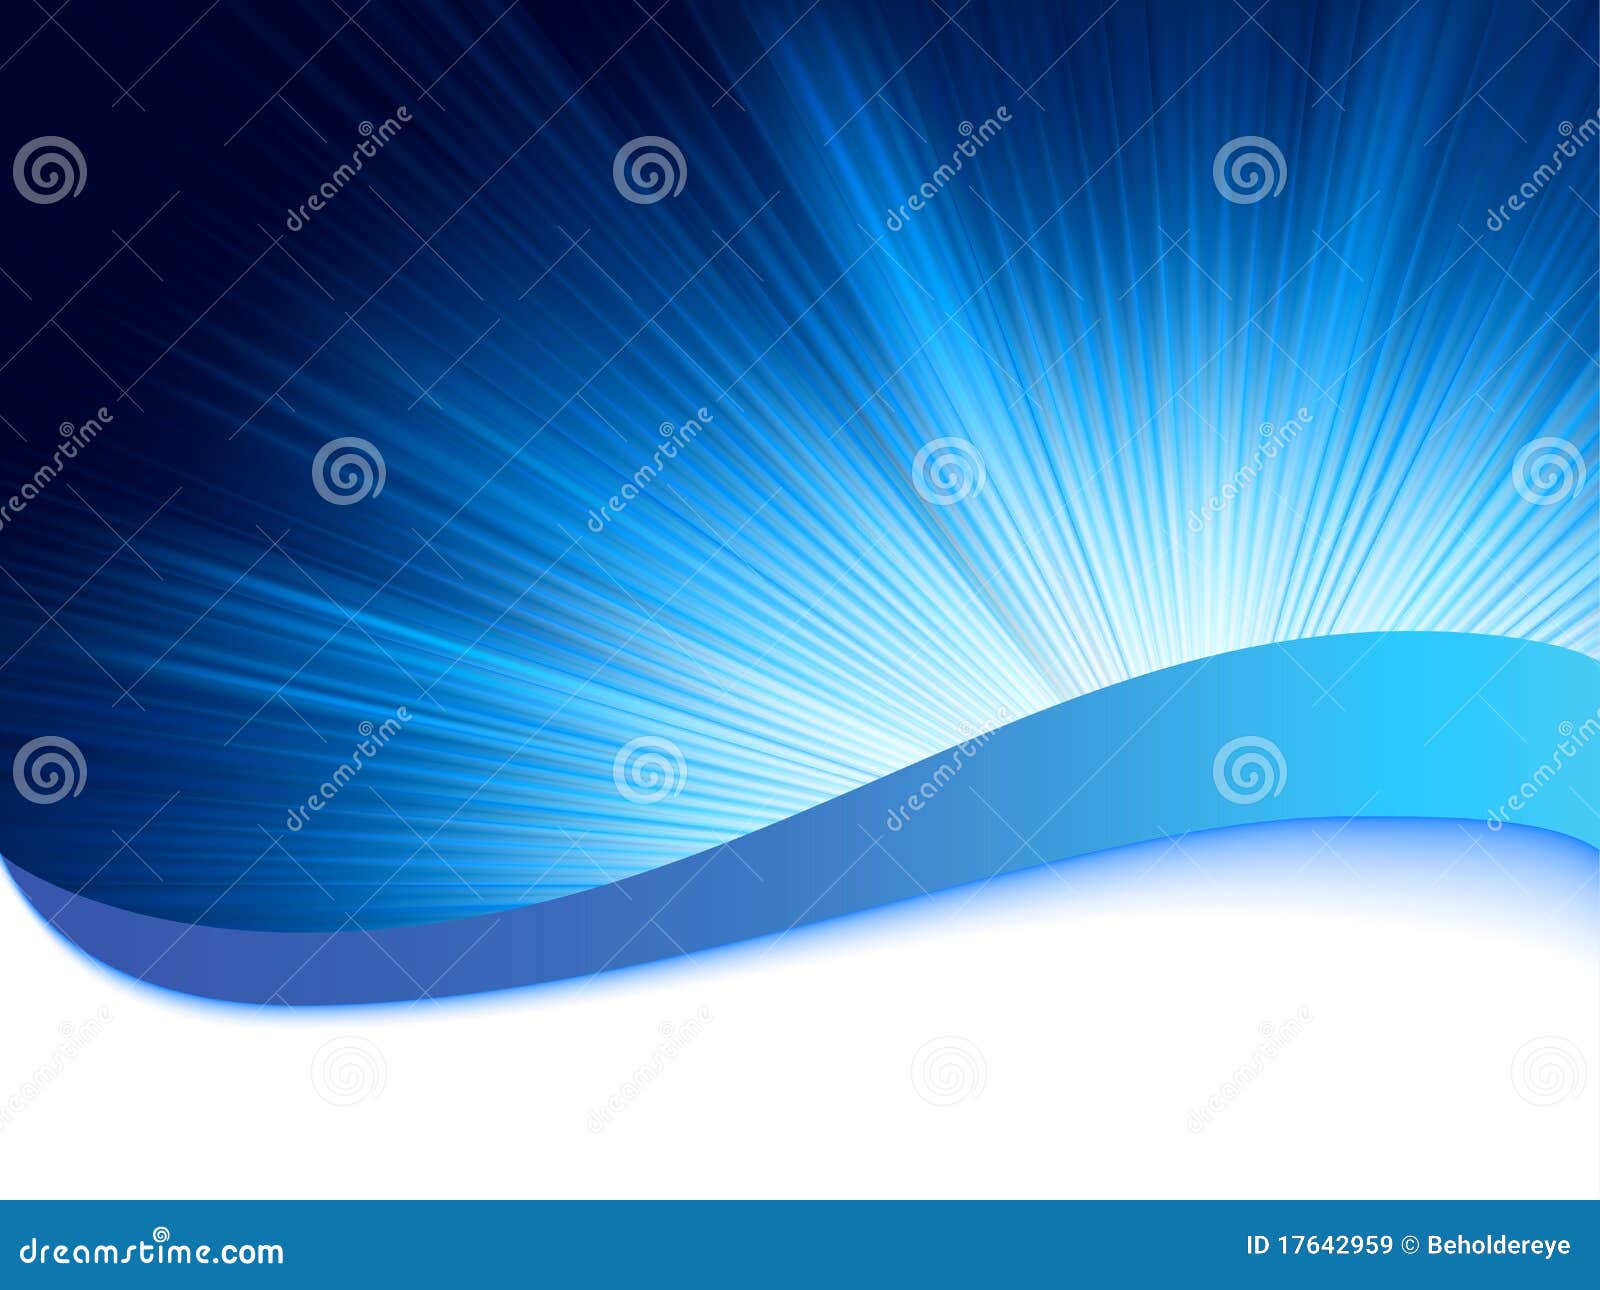 blue background with burst rays. eps 8